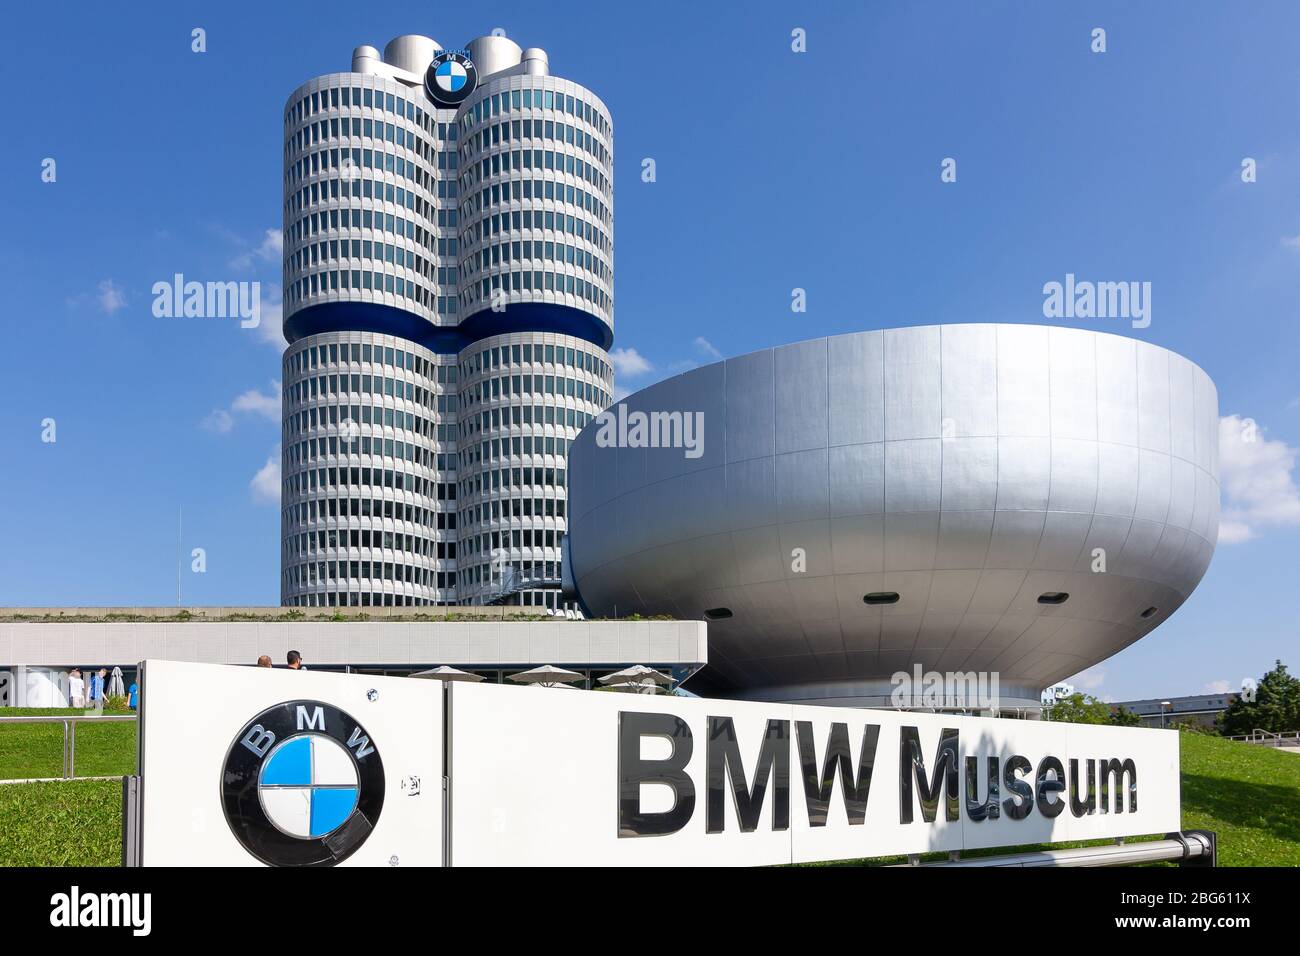 Panoramablick auf das BMW Museum und die Firmenzentrale. Hauptsitz in  München, Deutschland, 2020 Stockfotografie - Alamy